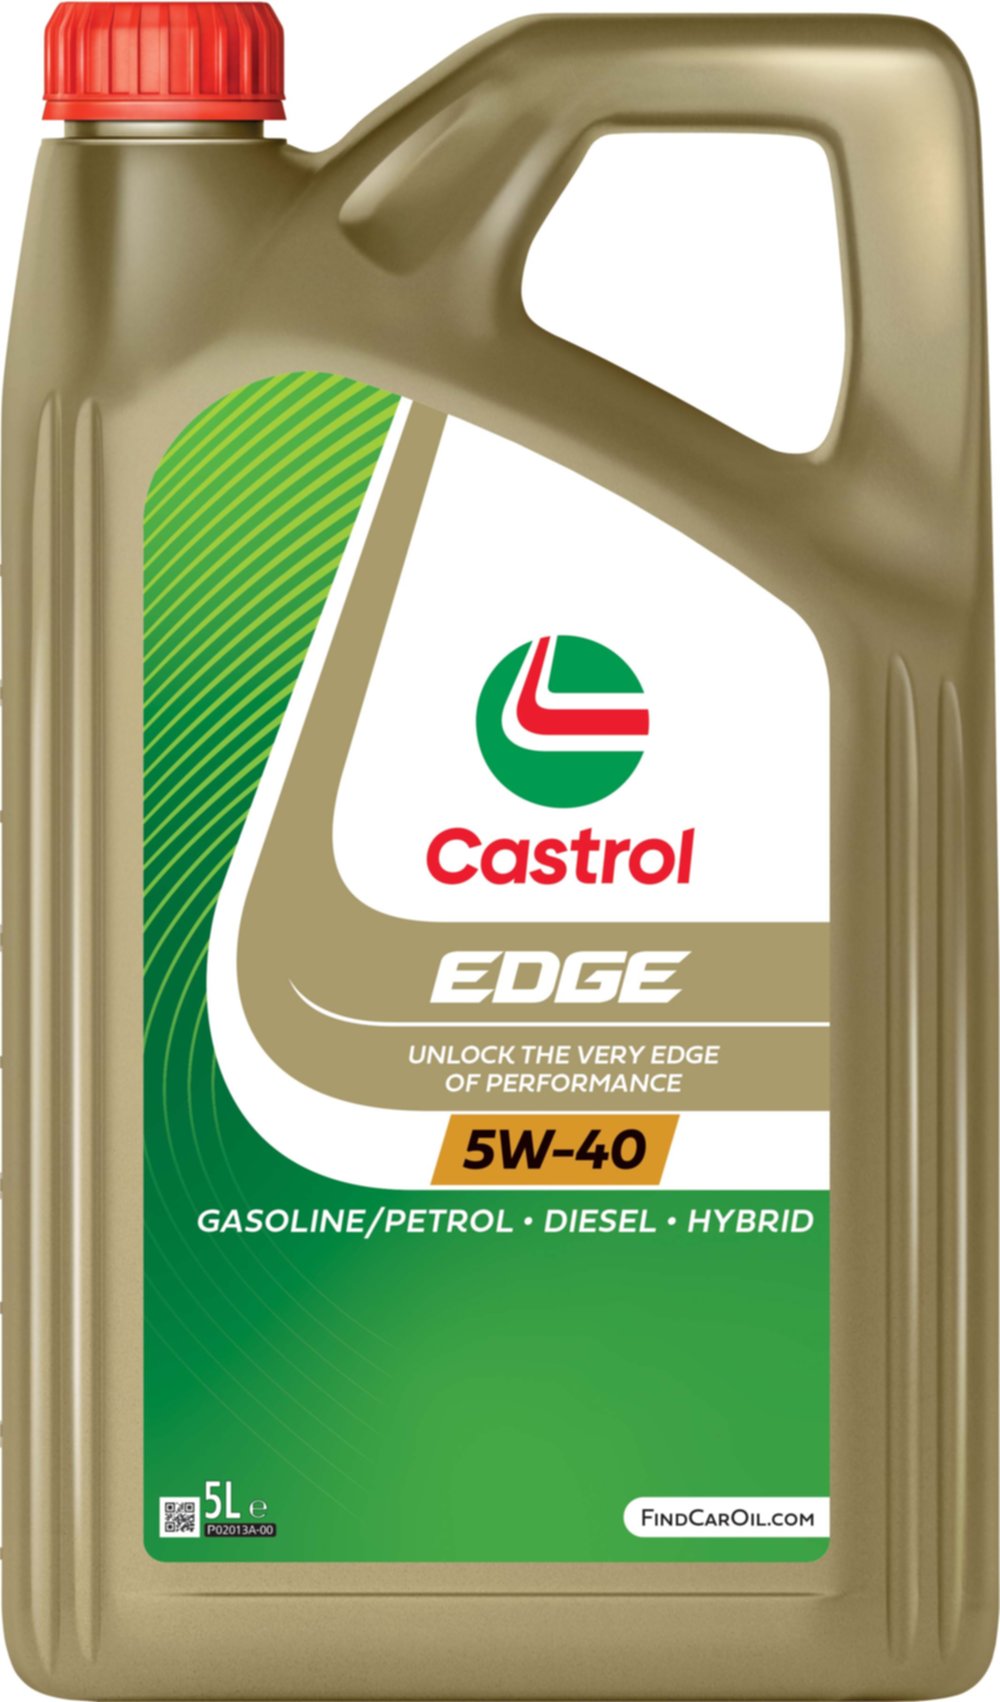 Huile pour moteur automobile EDGE 5W-40 5L - CASTROL